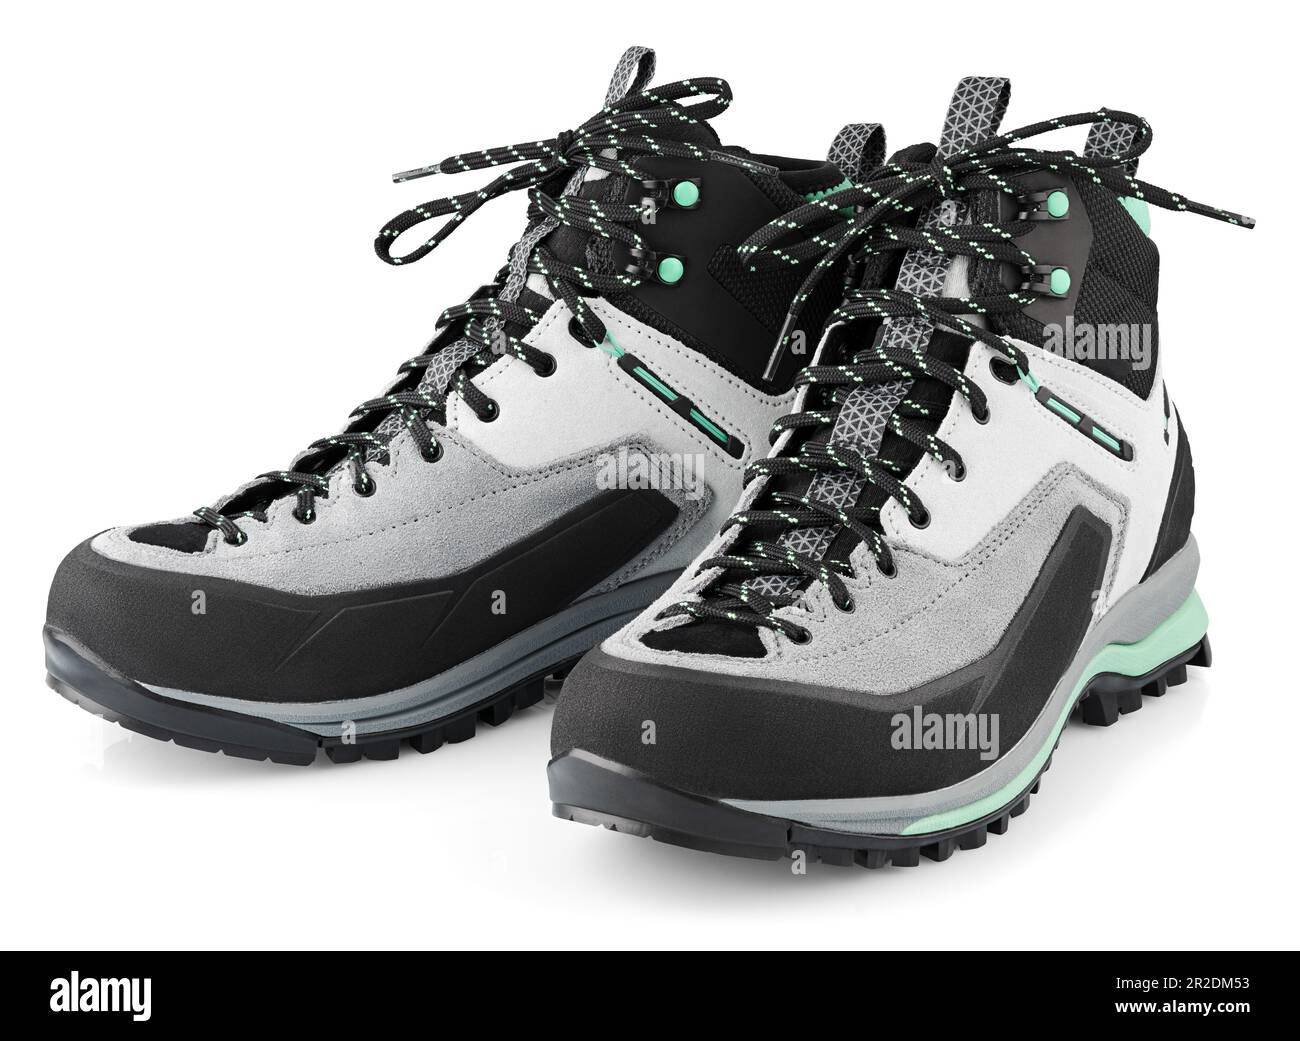 Nouvelles chaussures de randonnée sportives avec lacets noeud isolé sur fond blanc. Chaussures de randonnée d'hiver avec passe-cheveux. Profondeur de champ complète Banque D'Images